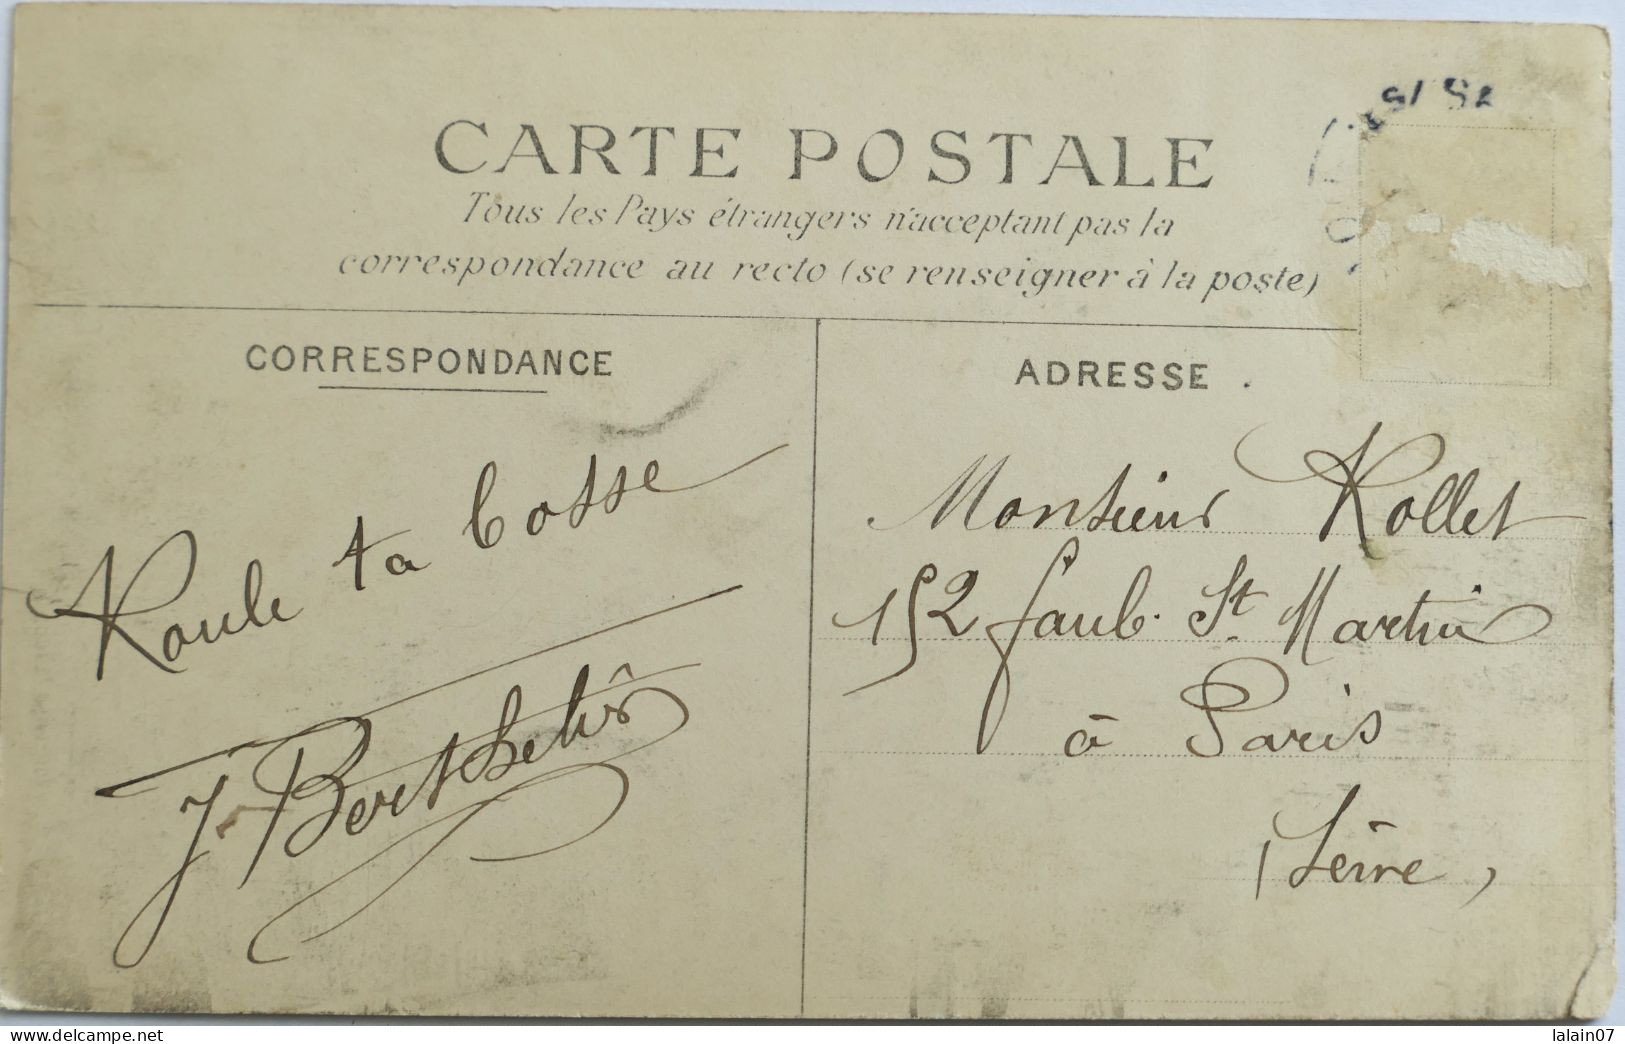 C. P. A. Couleur : 93 : SAINT OUEN : Rue Louis Leblanc, "Hôtel Meublé", Animé, Timbre En 1905 - Saint Ouen